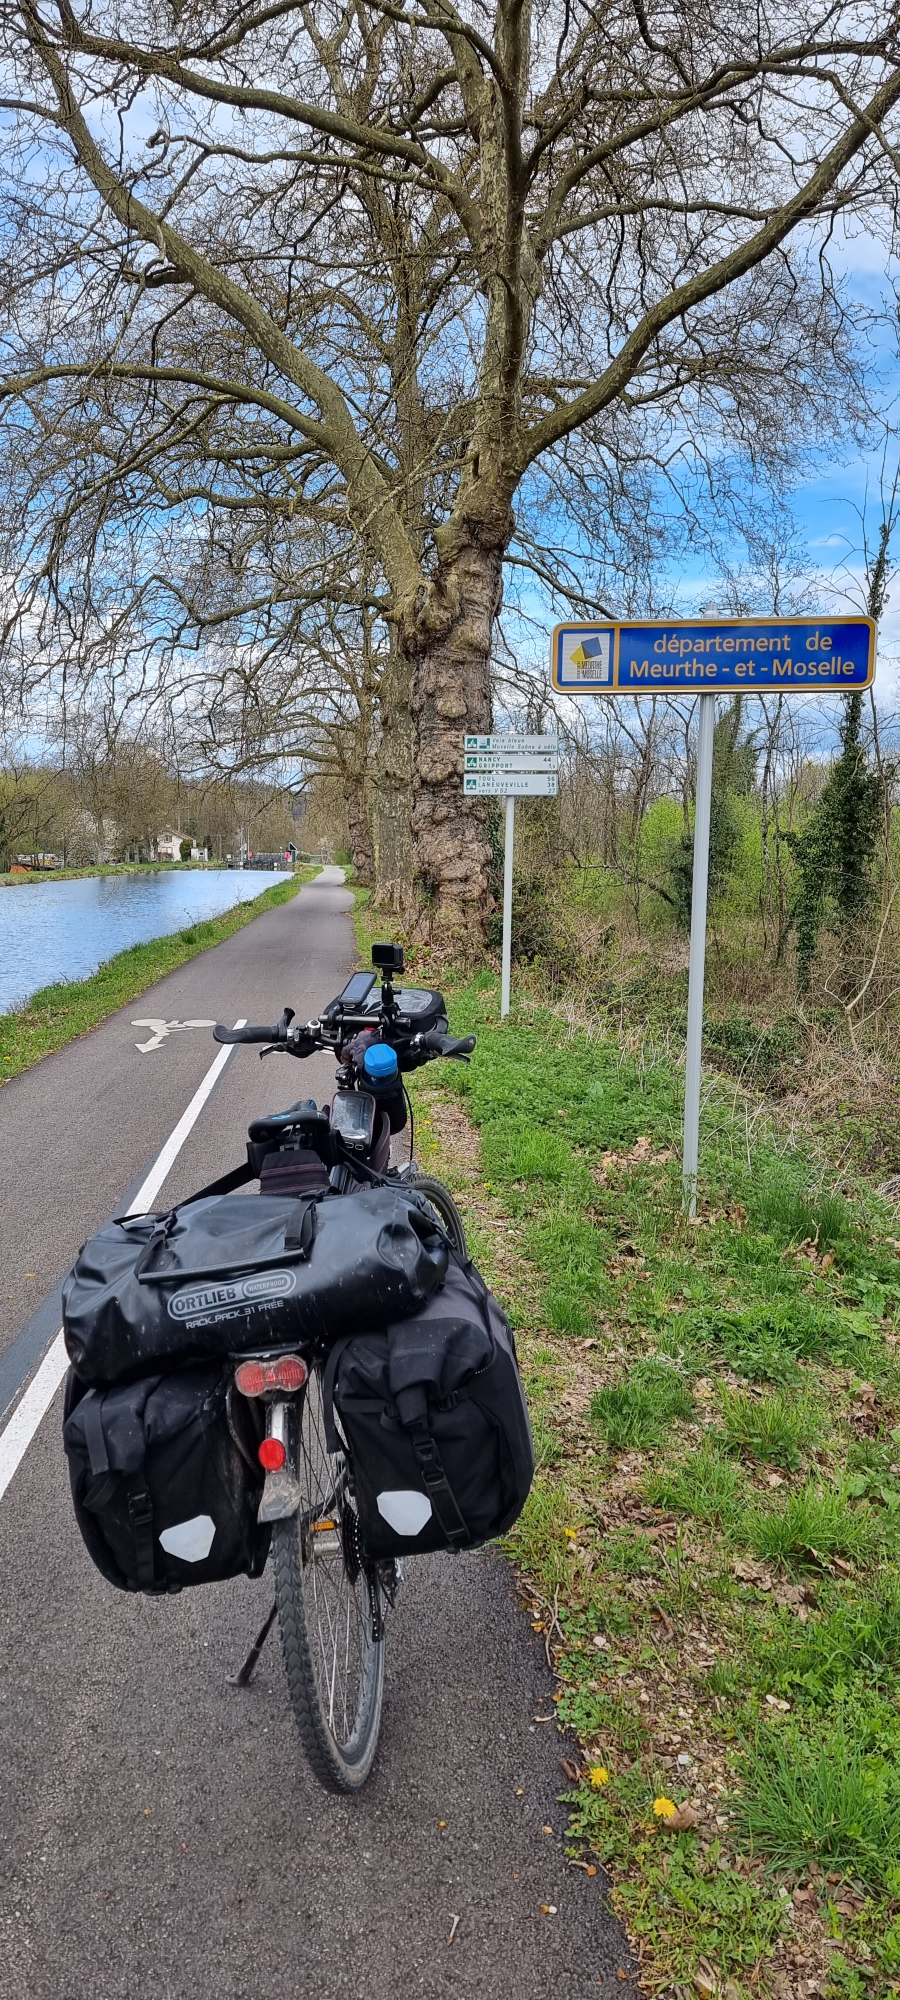 Am Canal des Vosges ins nächste Dpartement